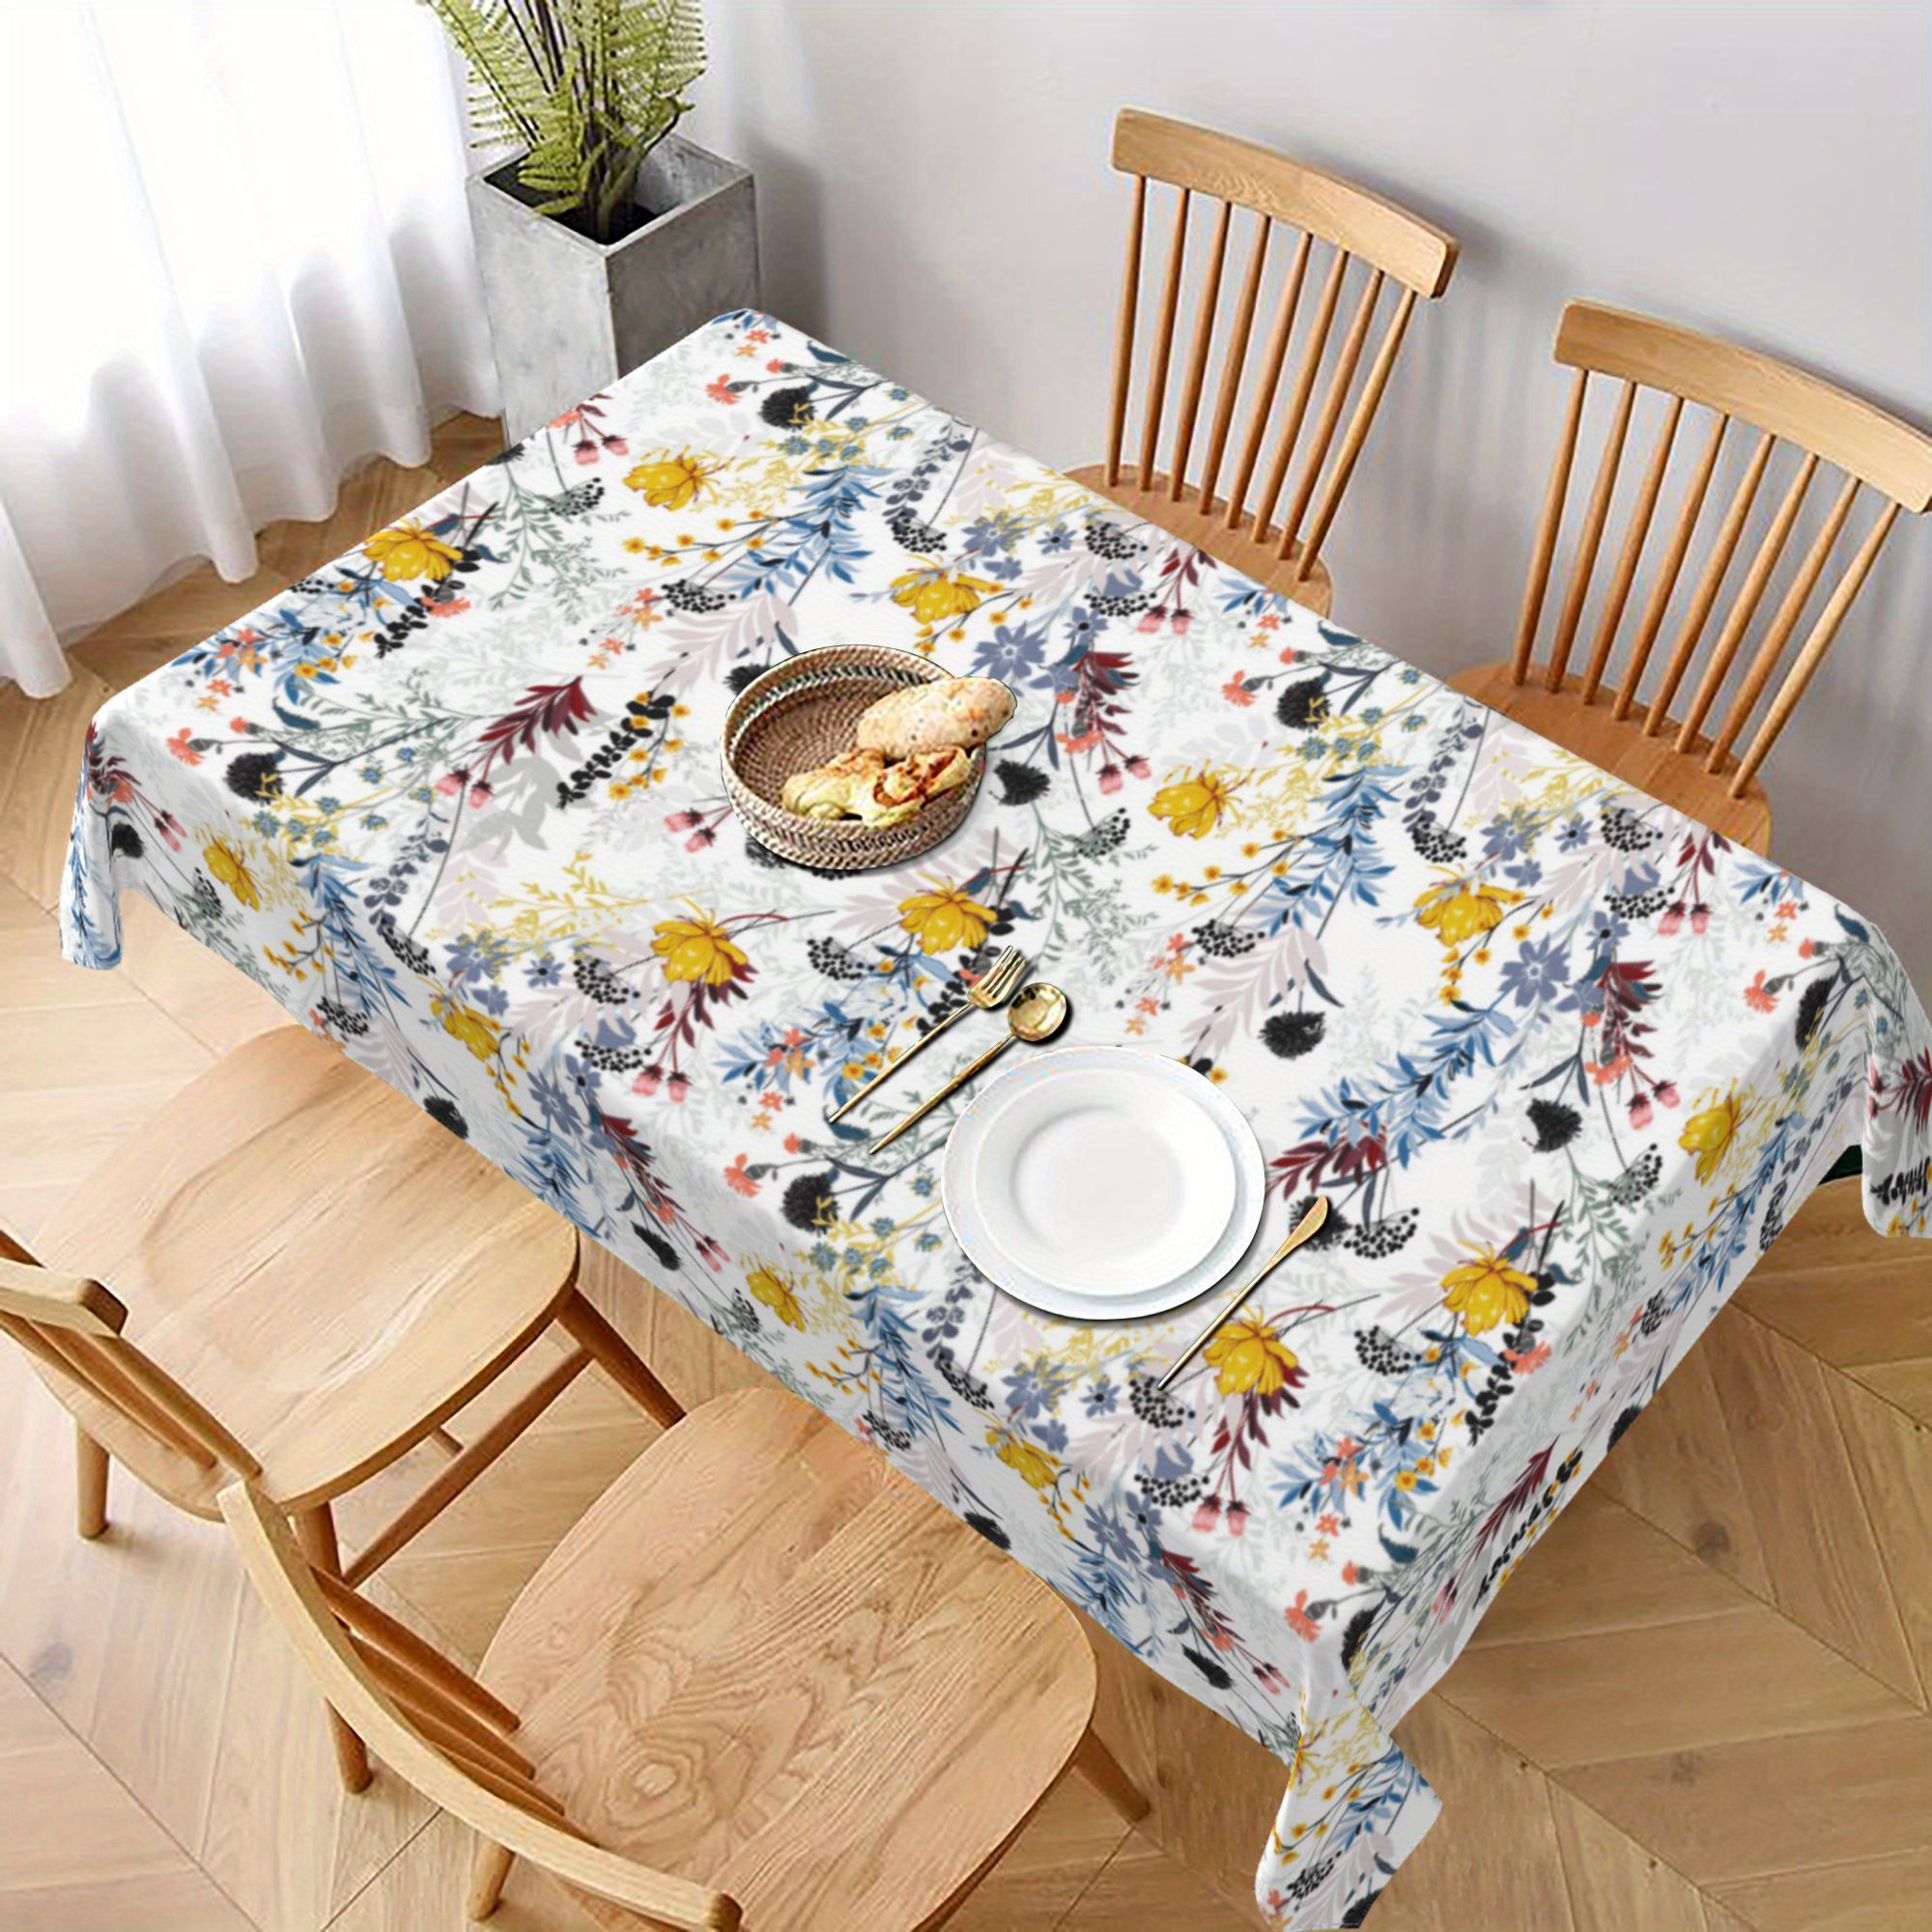  Mantel impermeable, diseño de lirios rurales y flores, mantel  para mesa de comedor, mantel para cocina, fiesta, decoración de mesa al  aire libre, mantel rectangular de 59.8 x 79.1 in 